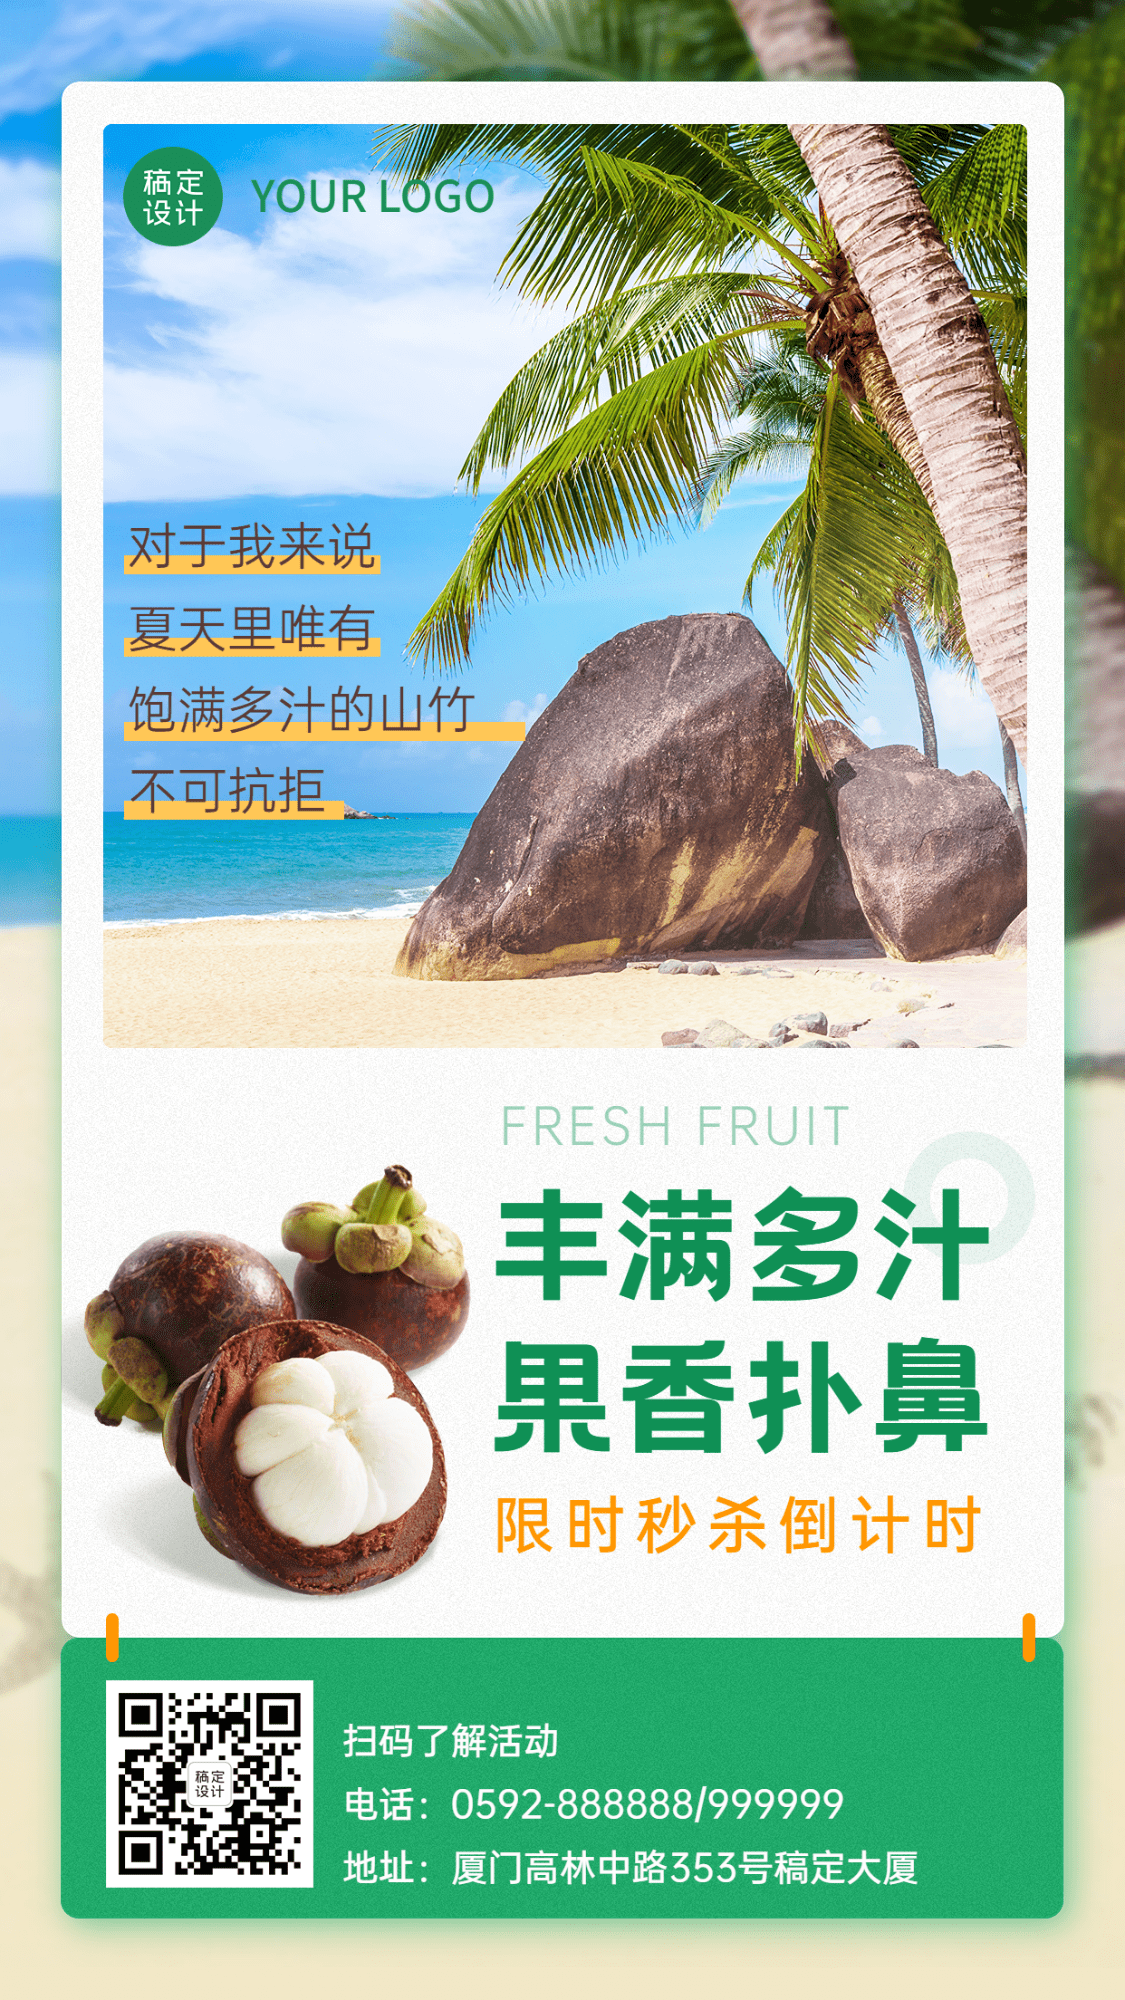 食品生鲜水果山竹产品展示竖版海报